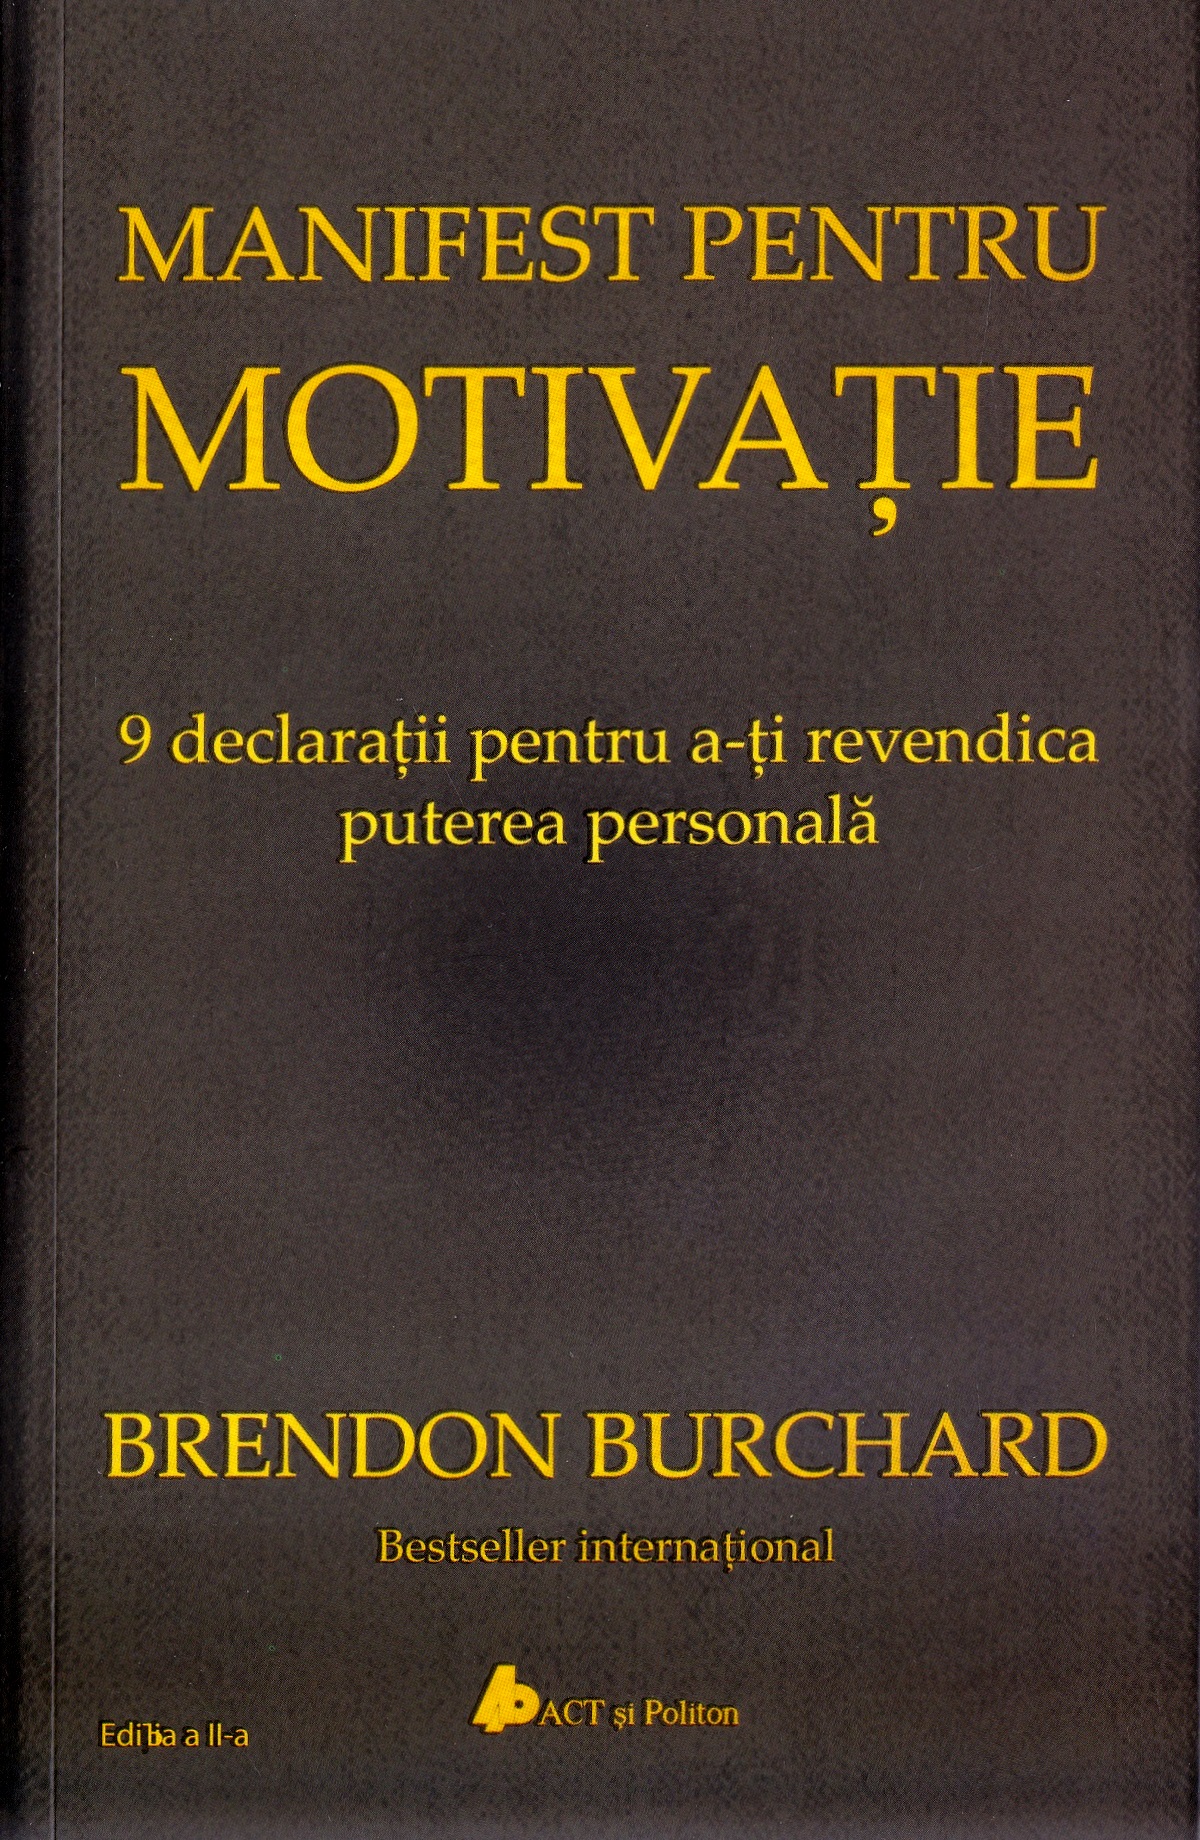 Manifest pentru motivatie - Brendon Burchard